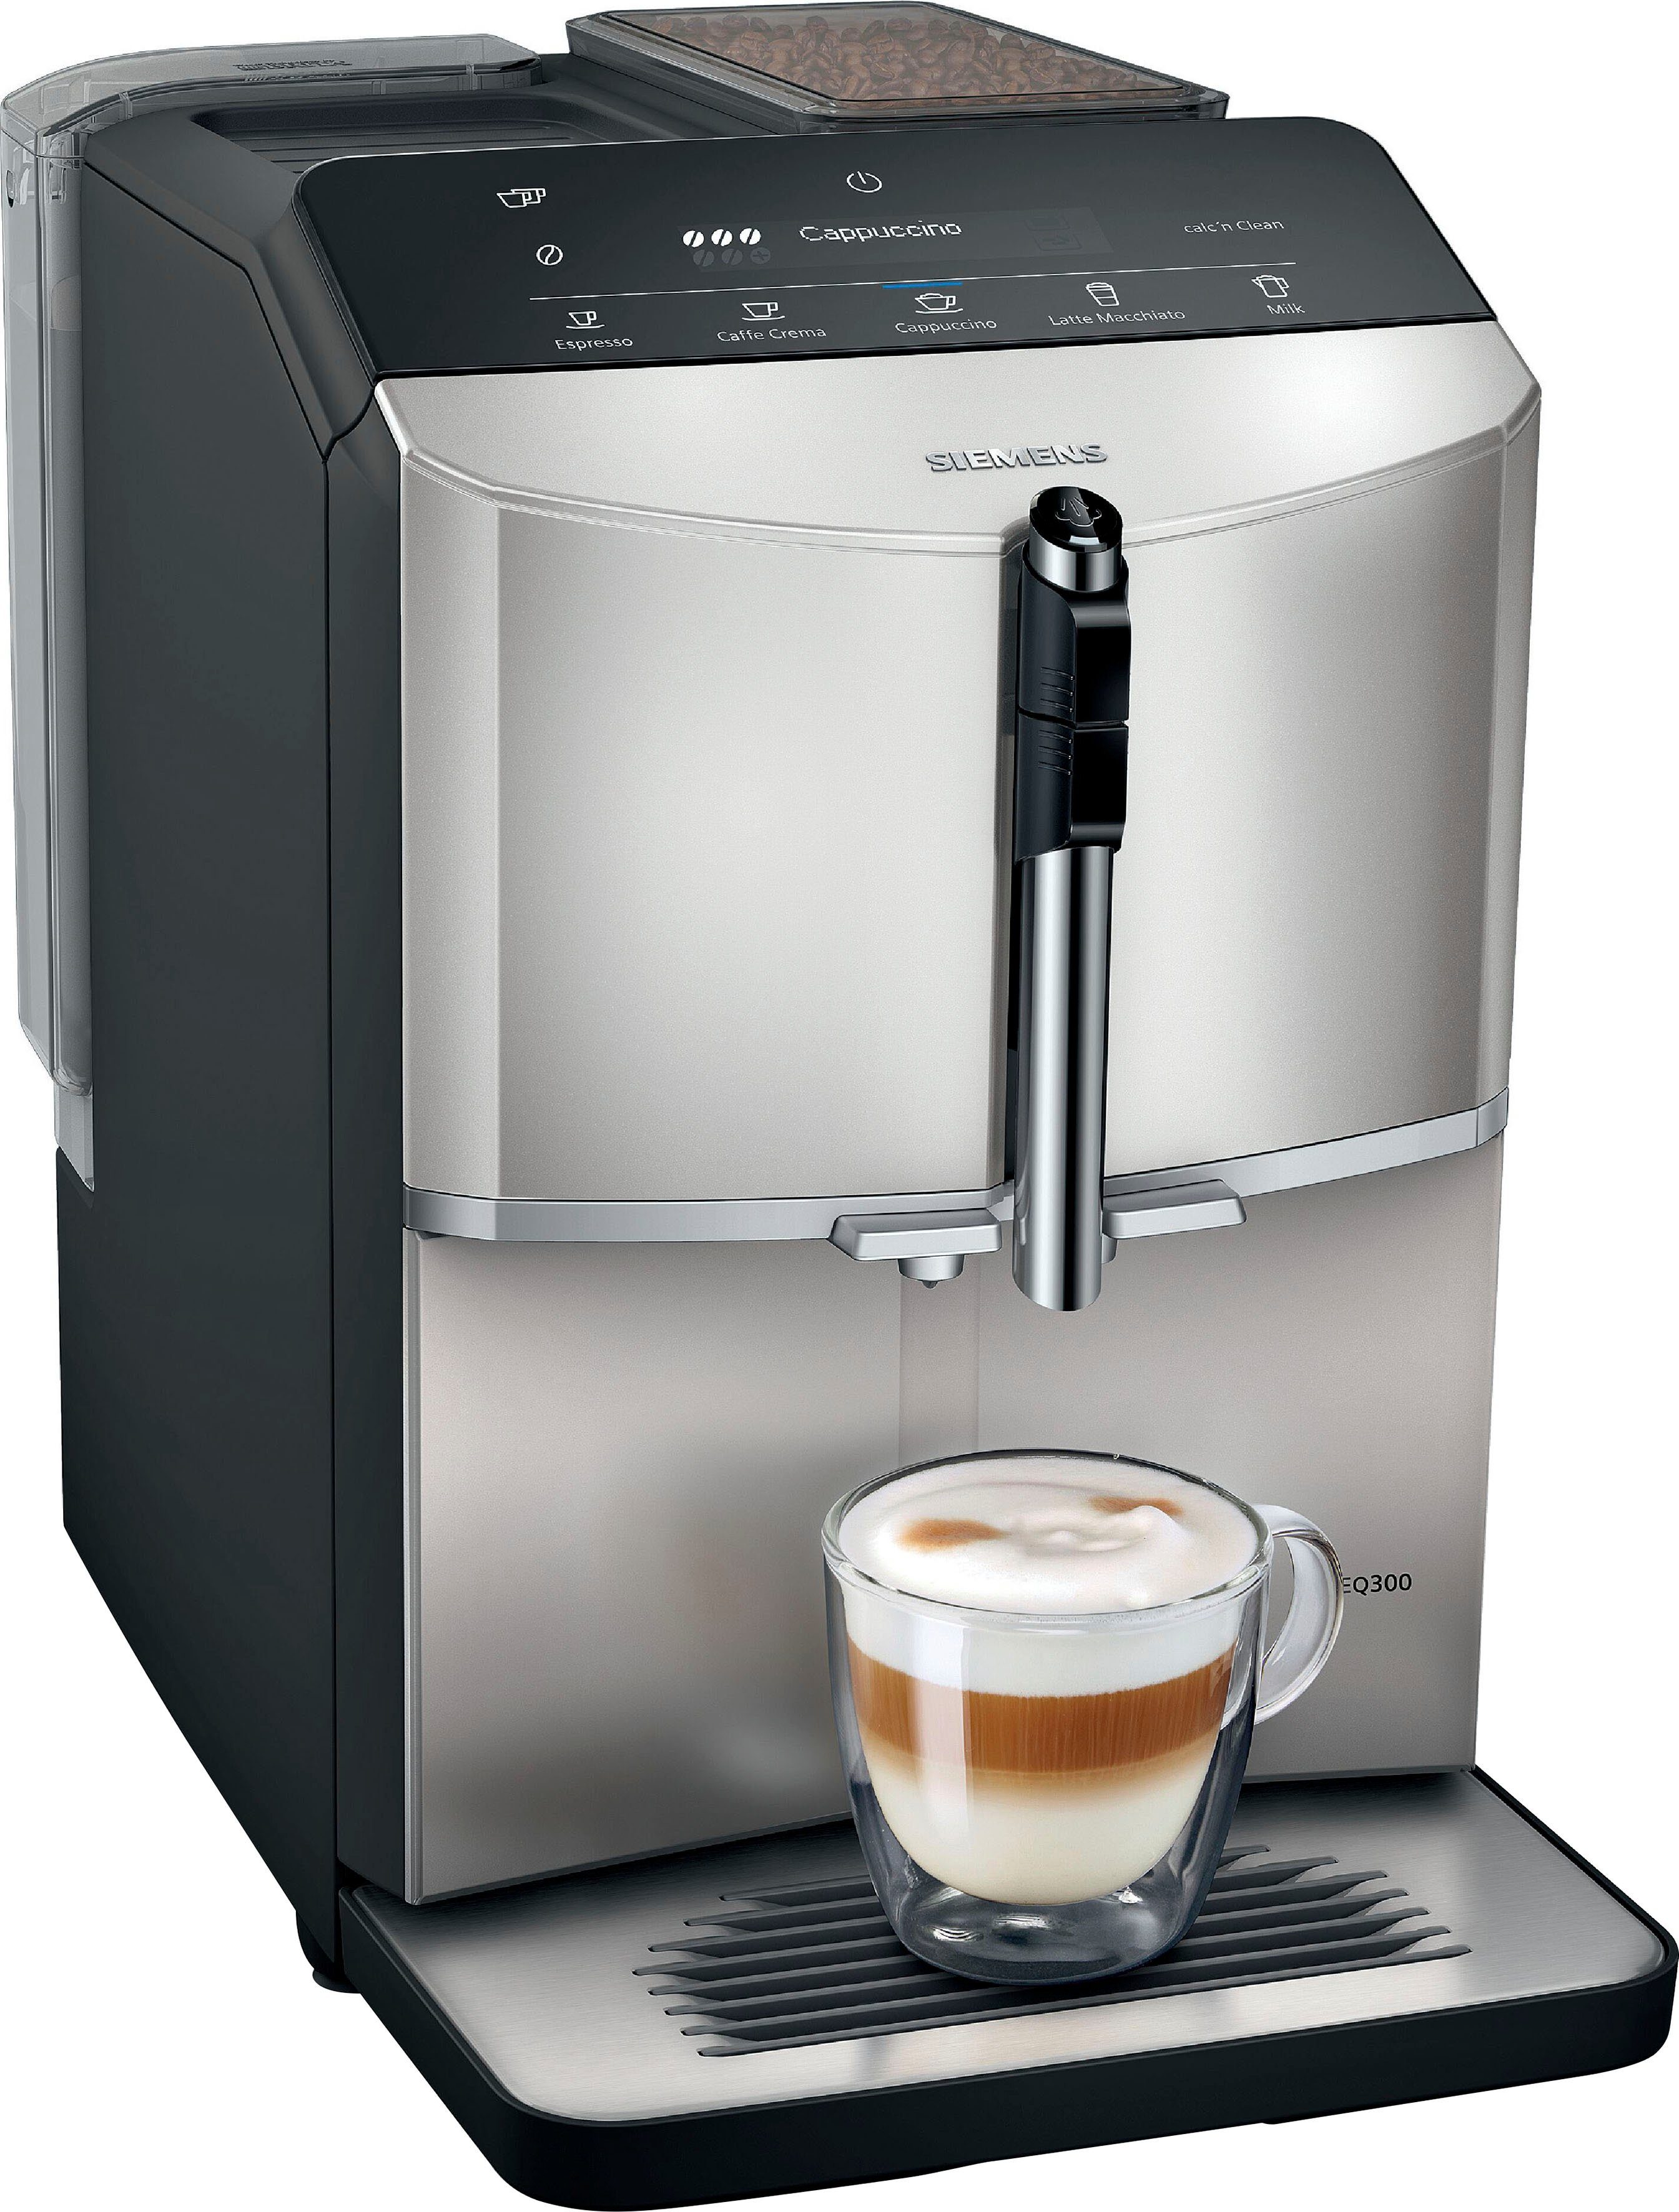 SIEMENS silver Inox metallic Kaffeevollautomat TF303E07,